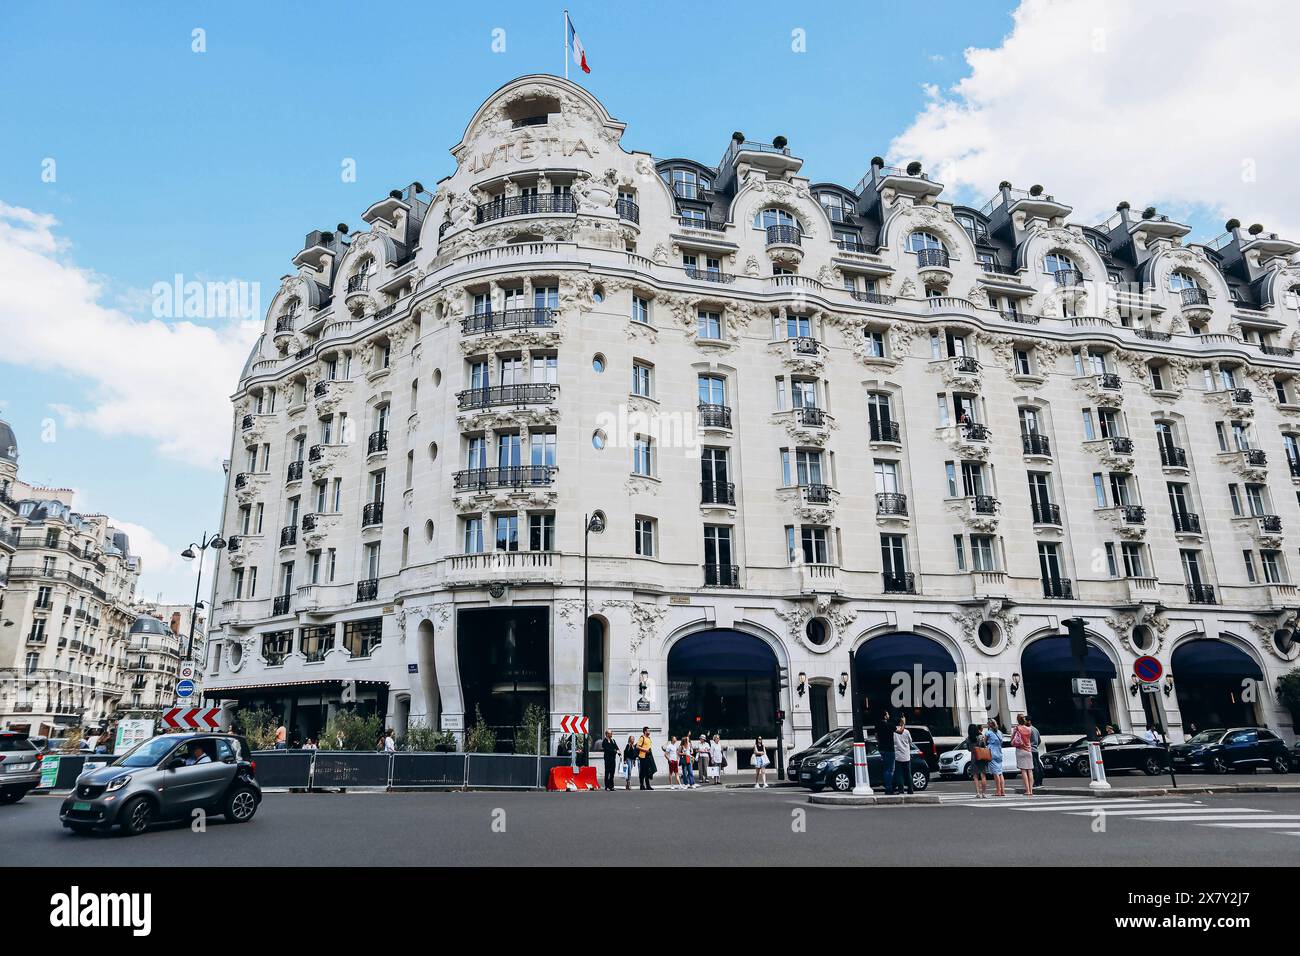 Parigi, Francia - 27.06.2022 : Hotel Lutetia, un punto di riferimento iconico situato nella vibrante zona di Saint-Germain-des-PrÃ©s di Parigi e l'unico Palac di lusso Foto Stock